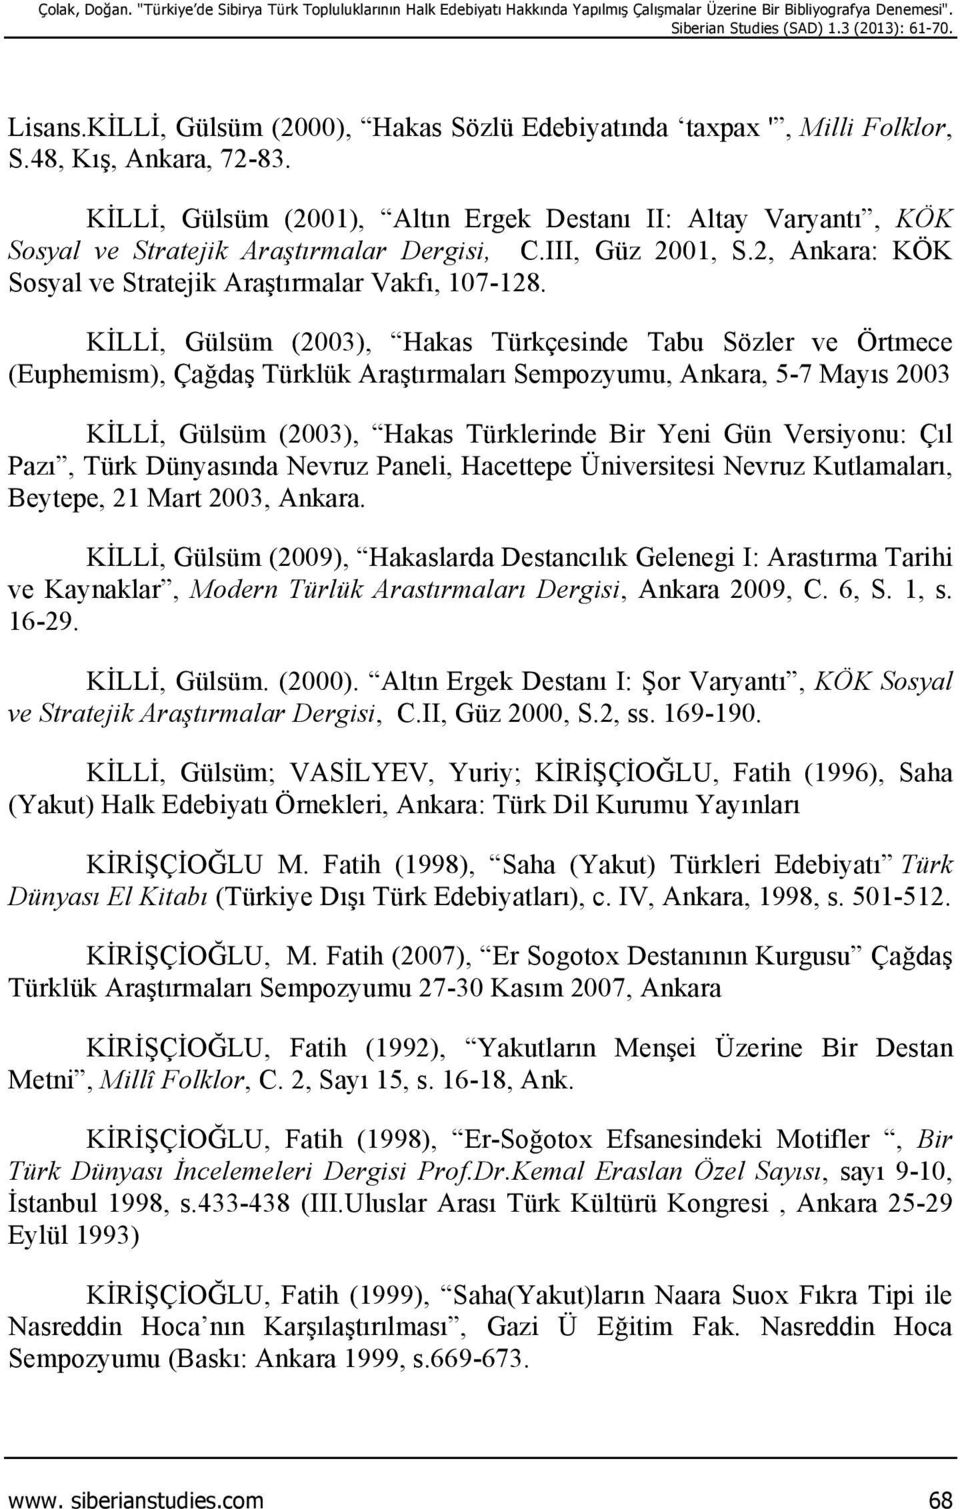 KİLLİ, Gülsüm (2001), Altın Ergek Destanı II: Altay Varyantı, KÖK Sosyal ve Stratejik Araştırmalar Dergisi, C.III, Güz 2001, S.2, Ankara: KÖK Sosyal ve Stratejik Araştırmalar Vakfı, 107-128.